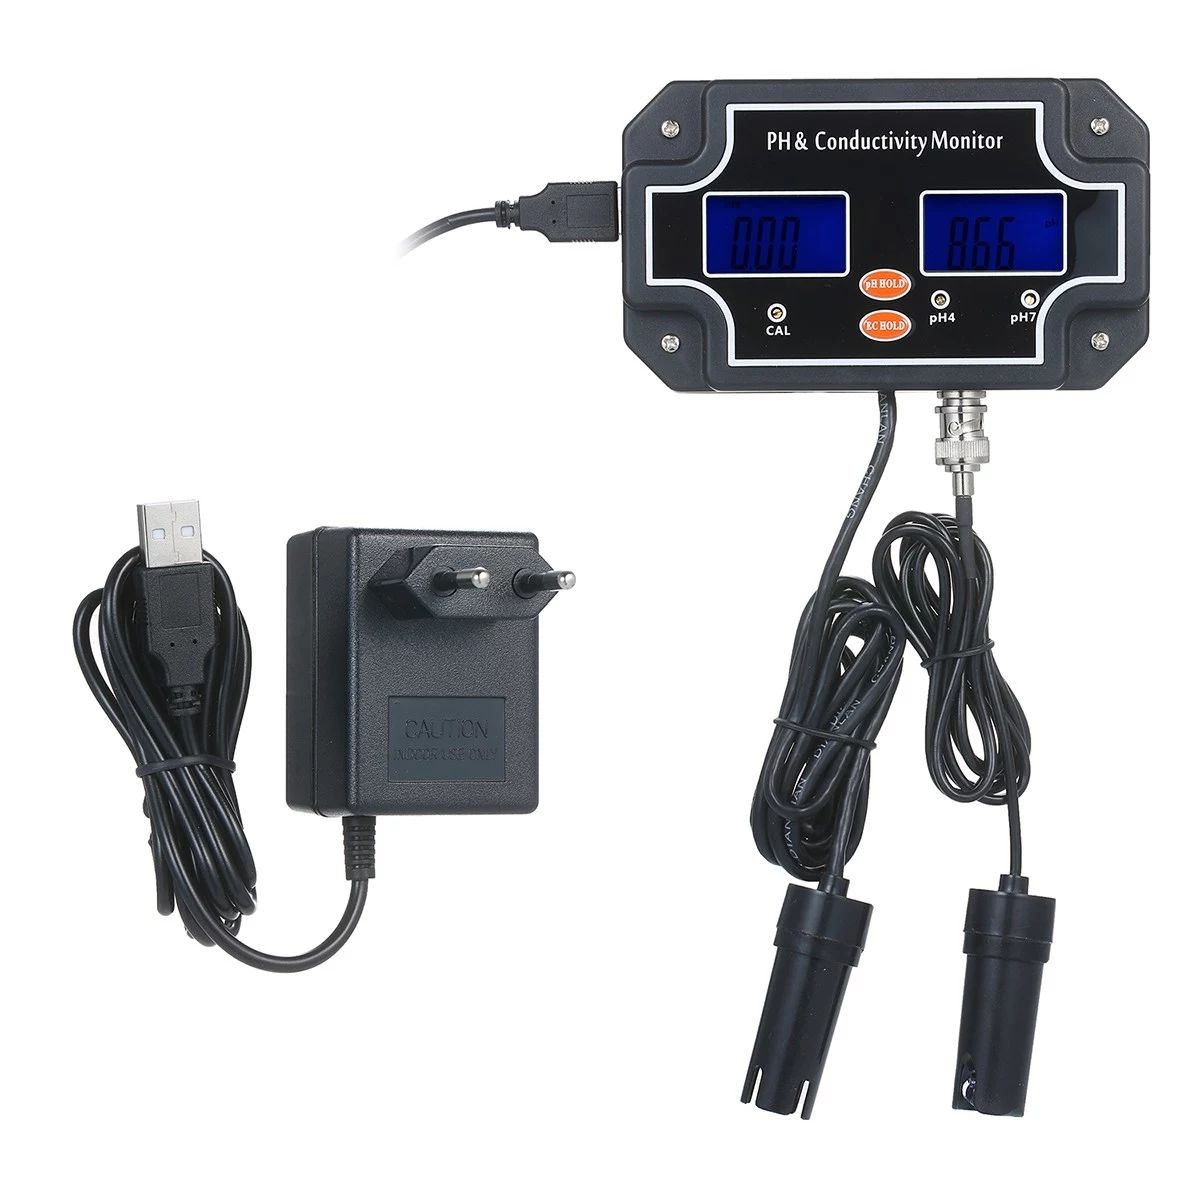 PHEC-2681-2-in-1-Water-Quality-Tester-pHEC-Meter-Waterproof-Double-Display-Tester-Black-EU-Plug-1749631